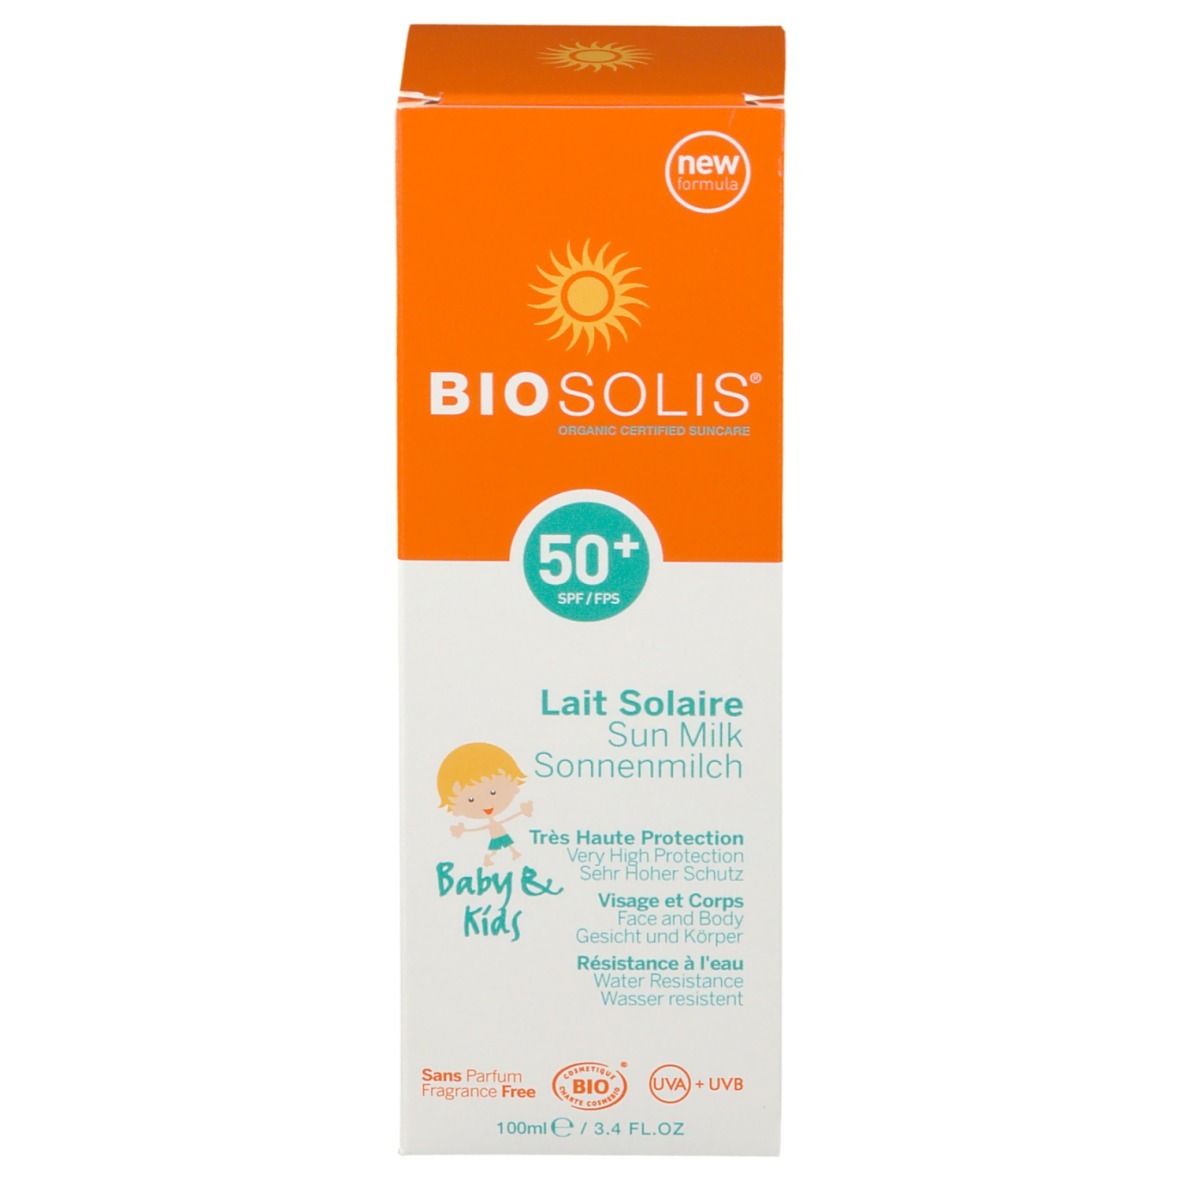 Biosolis® Lait solaire Kids SPF50+